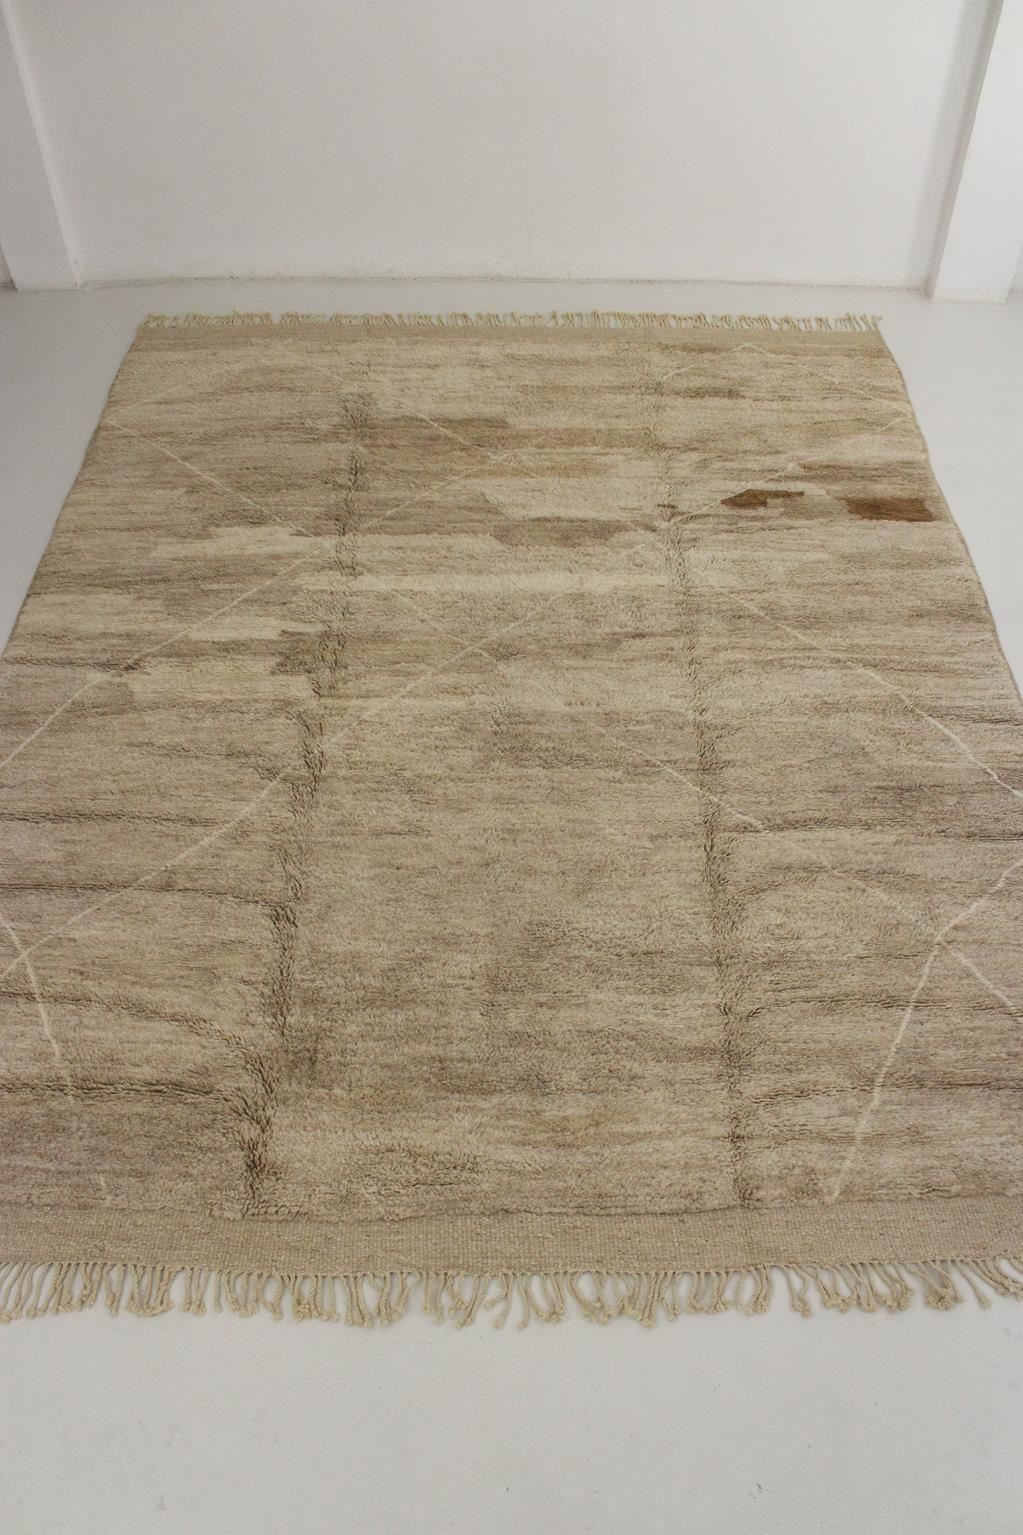 Ich habe diesen originellen Mrirt-Teppich im modernen Stil von Webern in der Gegend von Khenifra im Atlasgebirge in Marokko anfertigen lassen. Gruppen von Frauen weben dort immer noch von Hand auf traditionellen, vertikalen Webstühlen, um diese